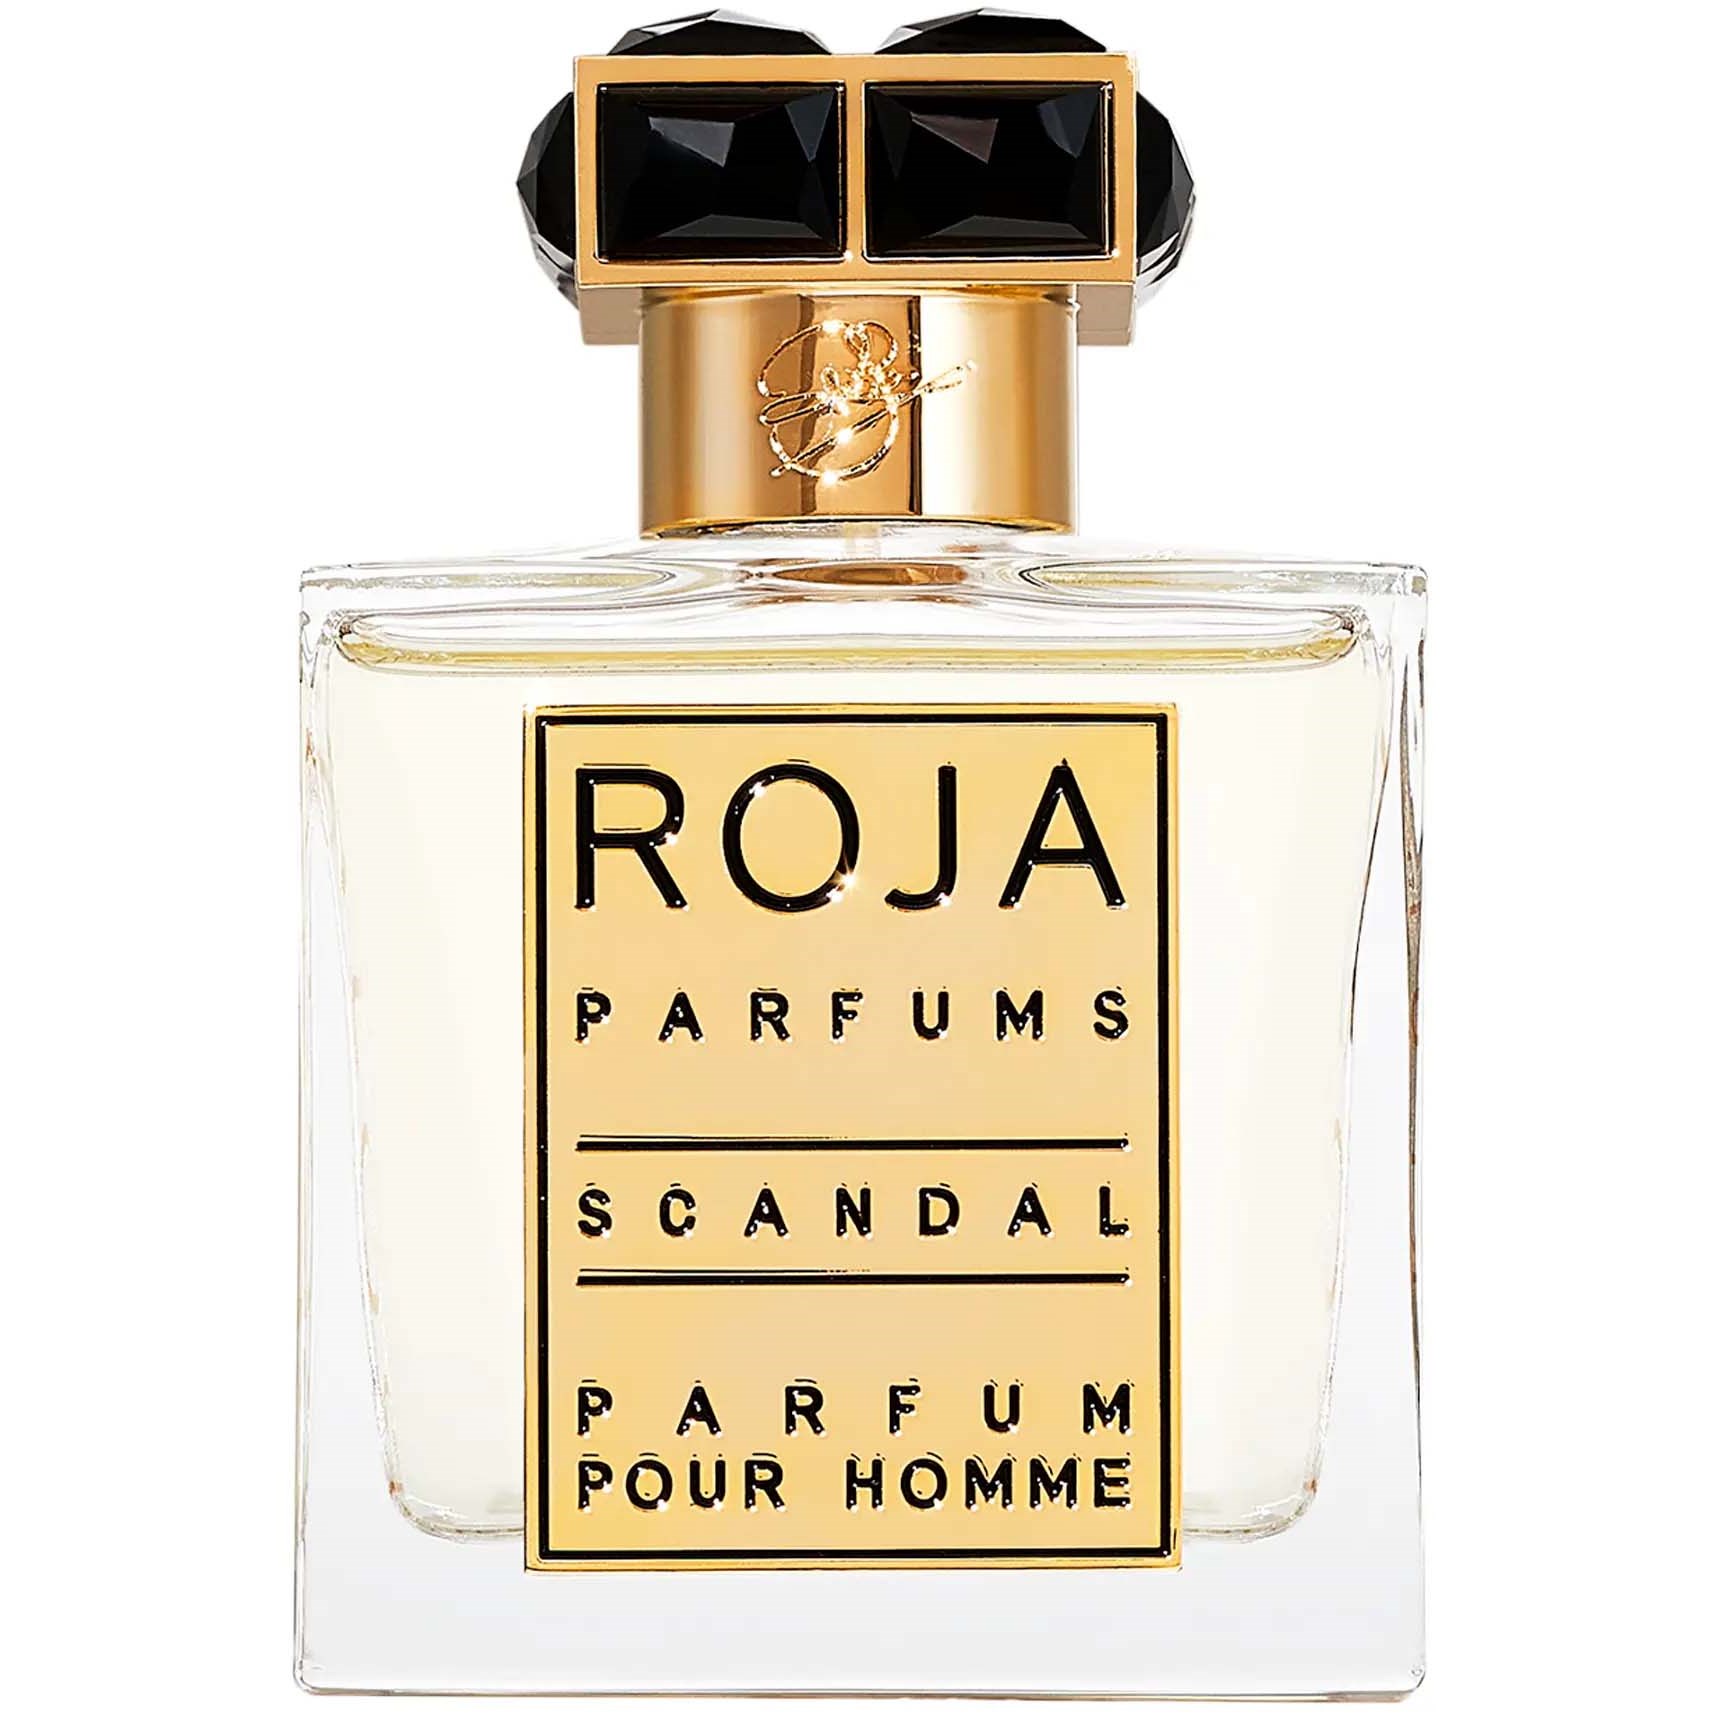 ROJA PARFUMS Scandal Pour Homme Parfum 50 ml